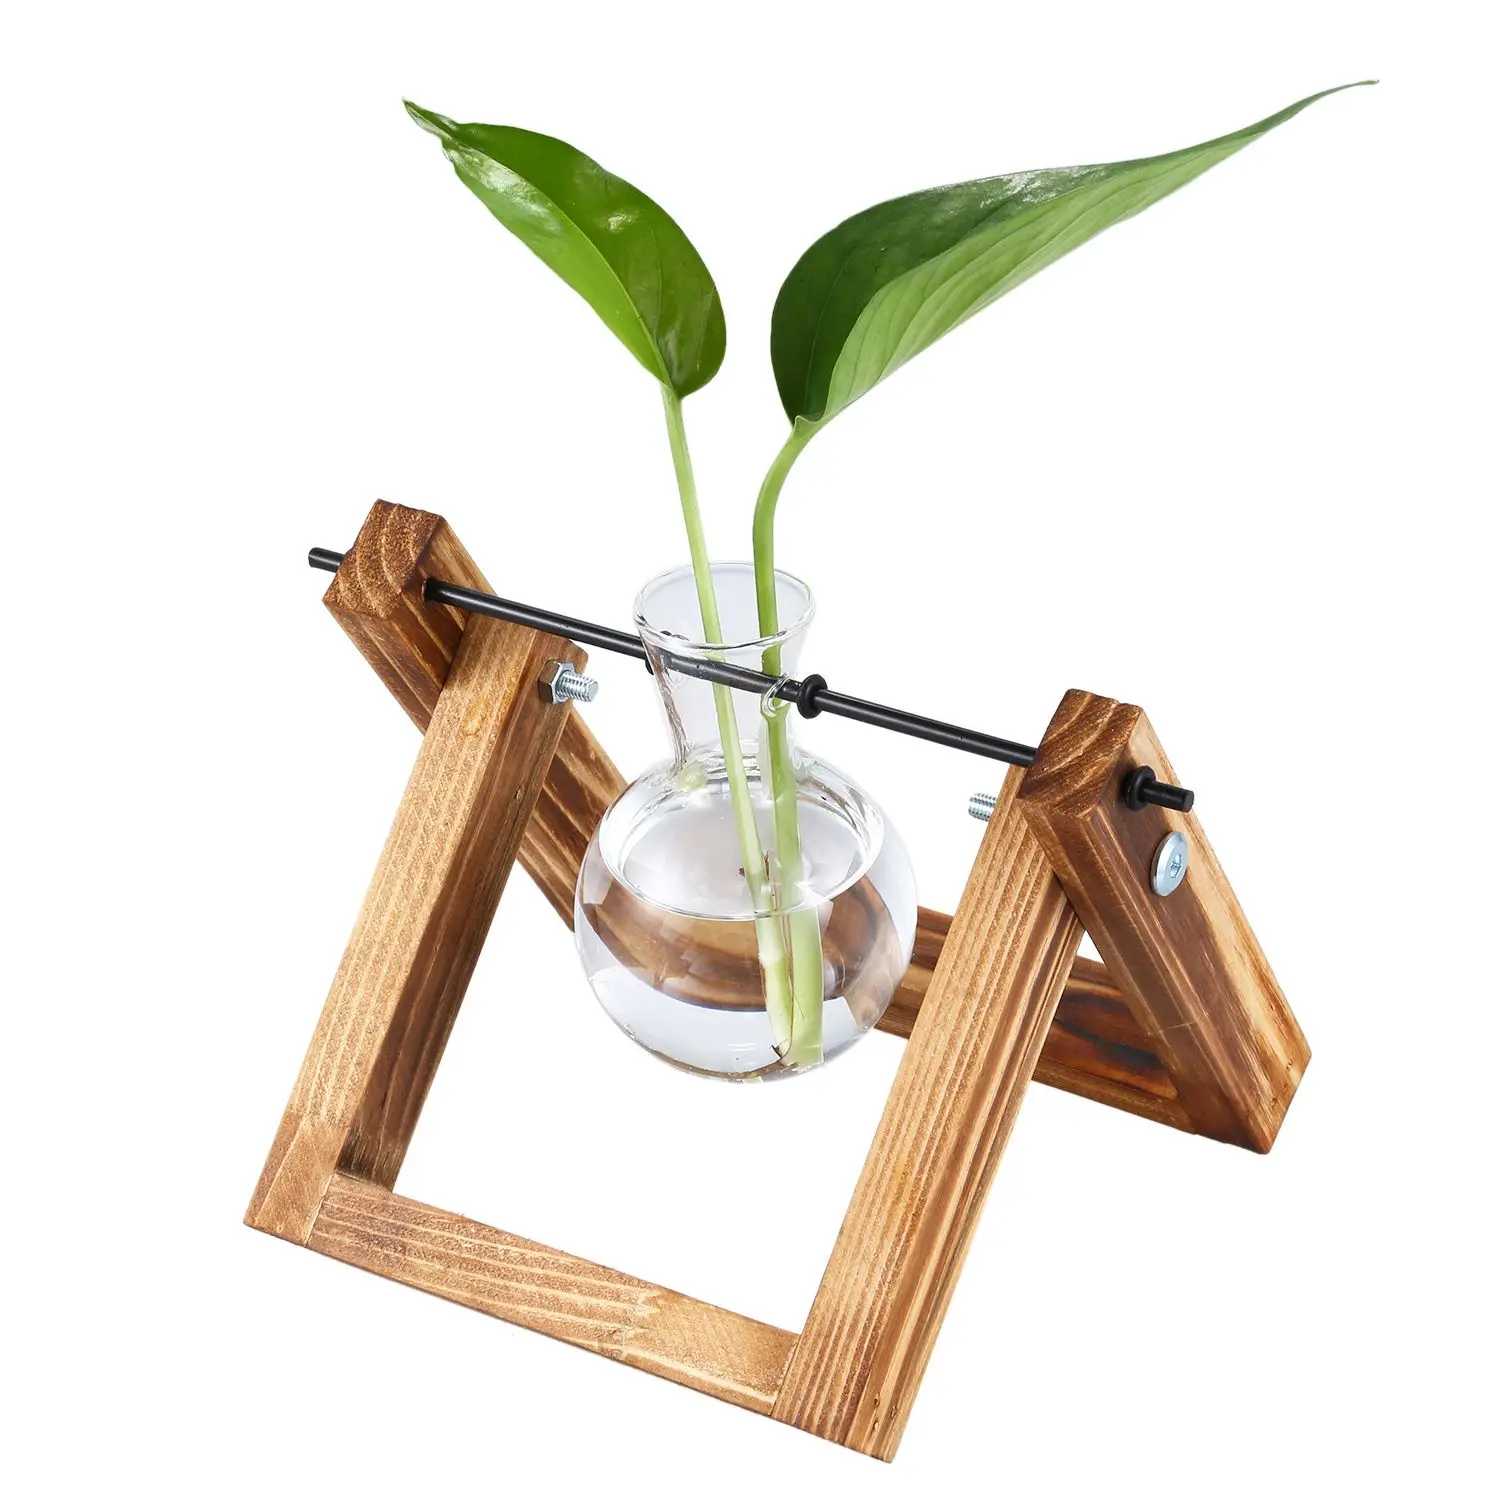 JEYL деревянная подставка прозрачный стеклянный растительный контейнер стоящий Гидропоника цветочный горшок домашний стол Декор(подставка с 1 горшком